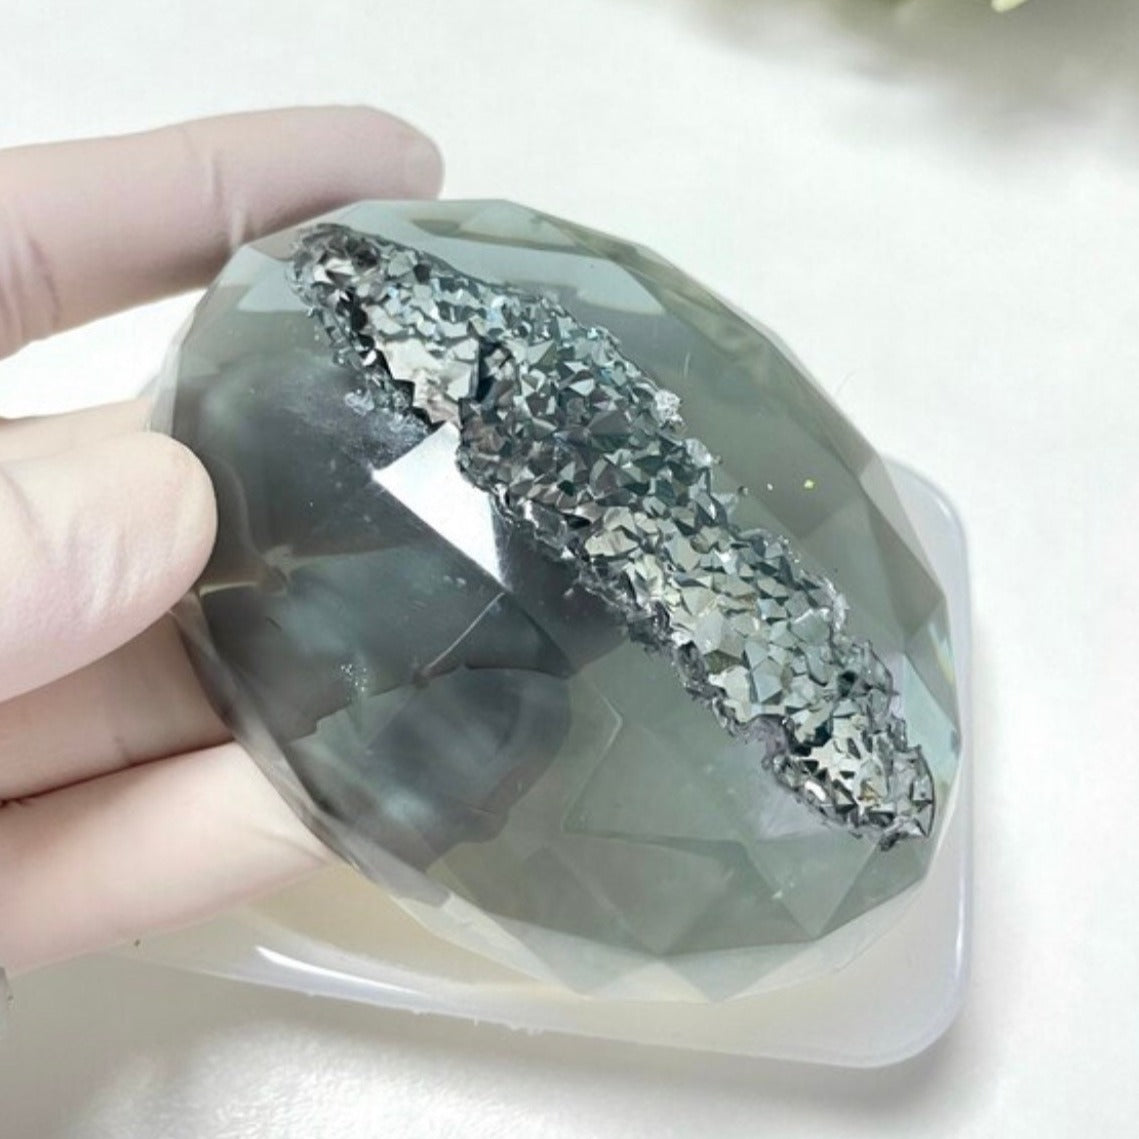 Kristall-Geoden-Silikonform: Erstellen Sie atemberaubende Kristall-Geoden-Designs